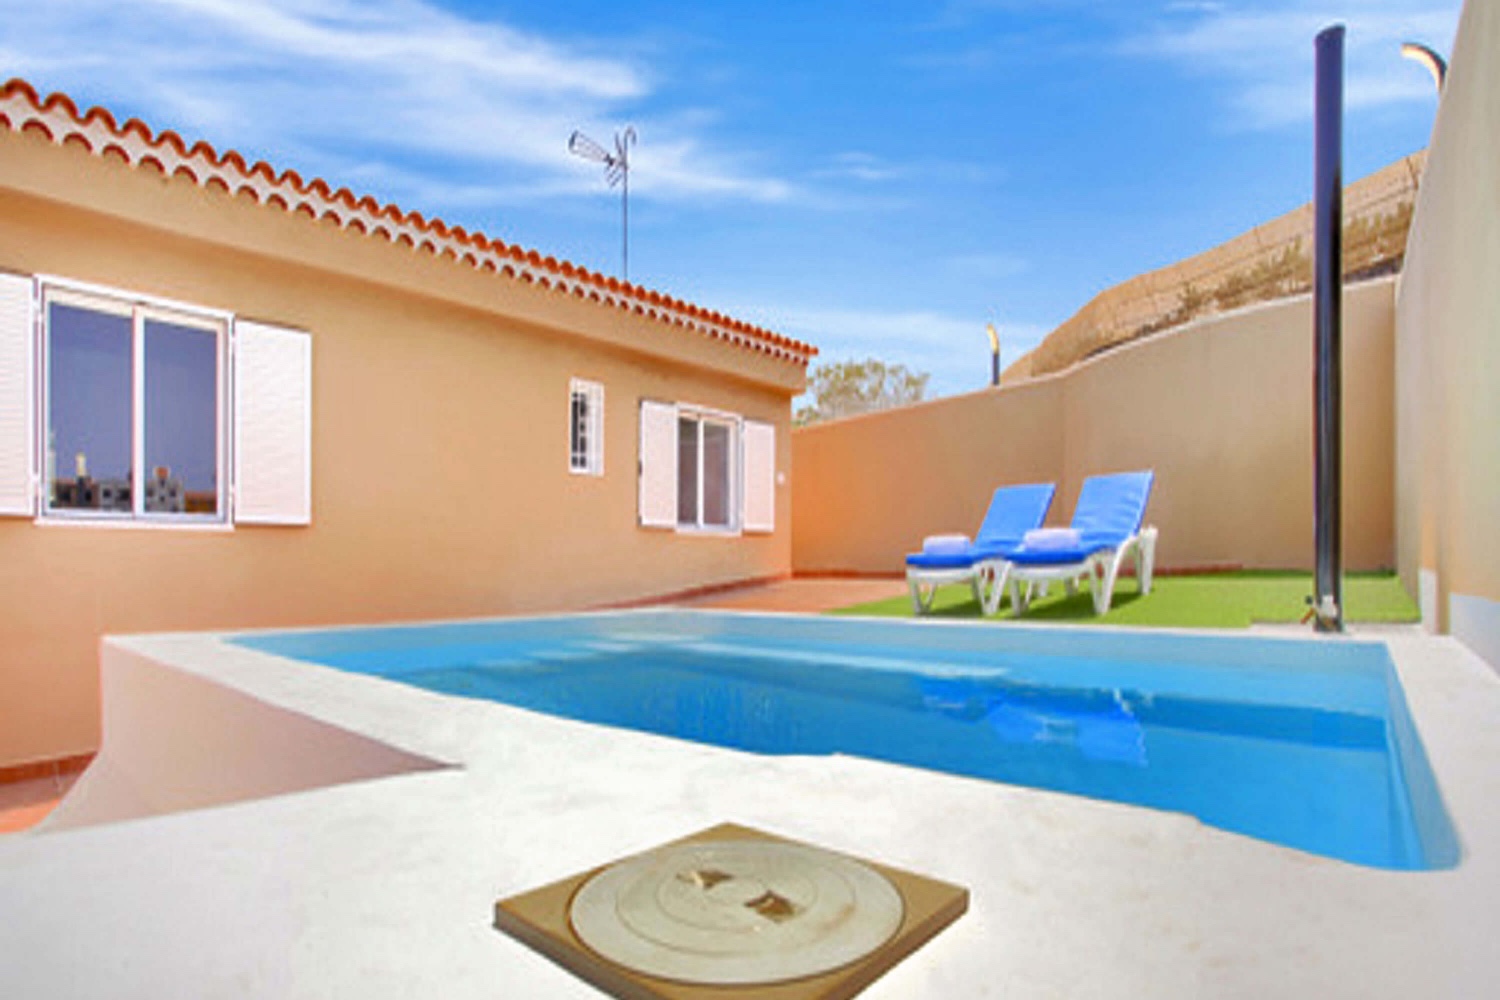 Smukt selvstændigt hus med privat pool beliggende i Guía de Isora kun 1,5 km fra San Juán strand